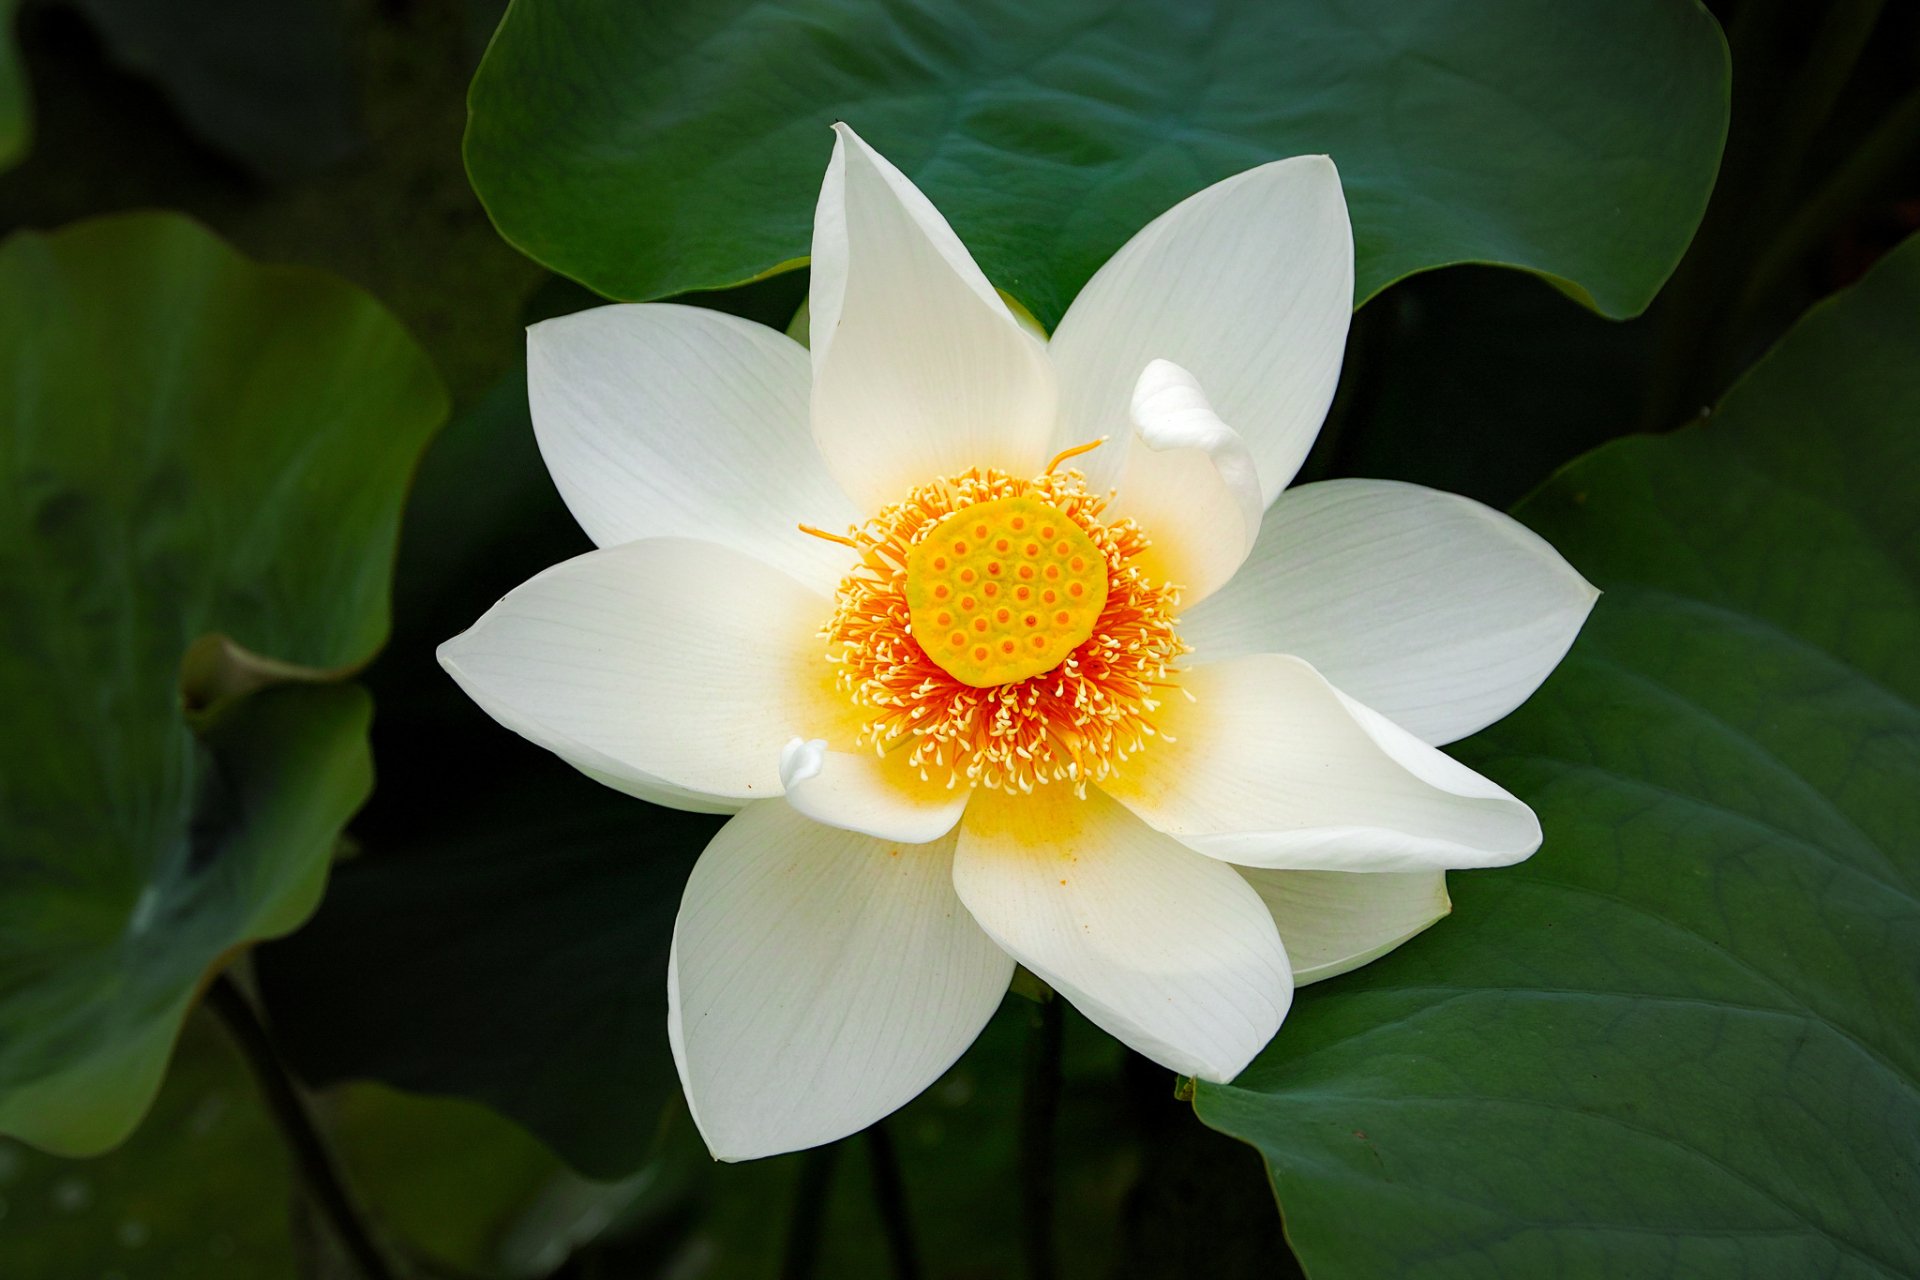 Hoa sen là biểu tượng của sự tinh khiết, cao quý và thanh tịnh trong văn hóa Việt Nam. Hình ảnh hoa sen sẽ khiến bạn ngưỡng mộ vẻ đẹp yên bình, tinh tế của nó. Hãy xem ảnh hoa sen để tìm hiểu thêm về giá trị văn hóa và tôn giáo đặc trưng của Việt Nam.